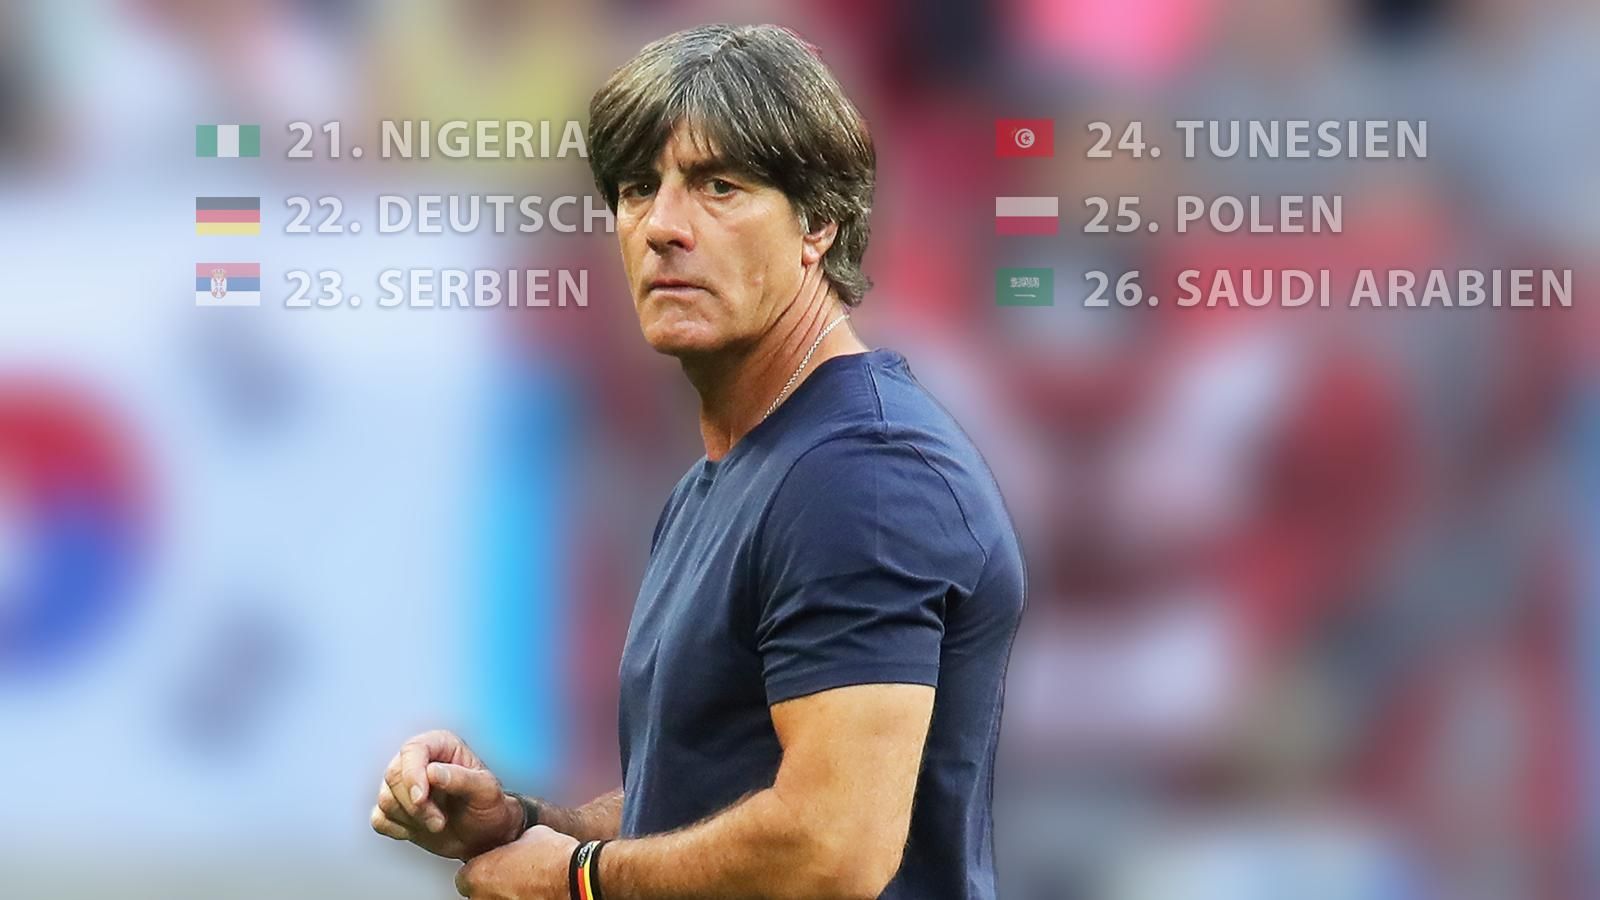 
                <strong>Das Ranking der Ausgeschiedenen</strong><br>
                Für 16 der 32 angetretenen Teams ist die WM bereits nach der Gruppenphase vorbei. Dabei stellt sich die Frage: Wie schlecht (oder vielleicht auch gut) war Deutschland eigentlich im Vergleich zu den ebenfalls gescheiterten Nationen? Wir haben das Ranking der Ausgeschiedenen aufgestellt – und siehe da: Das DFB-Team hat sich wenigstens einen soliden 22. Platz gesichert.
              